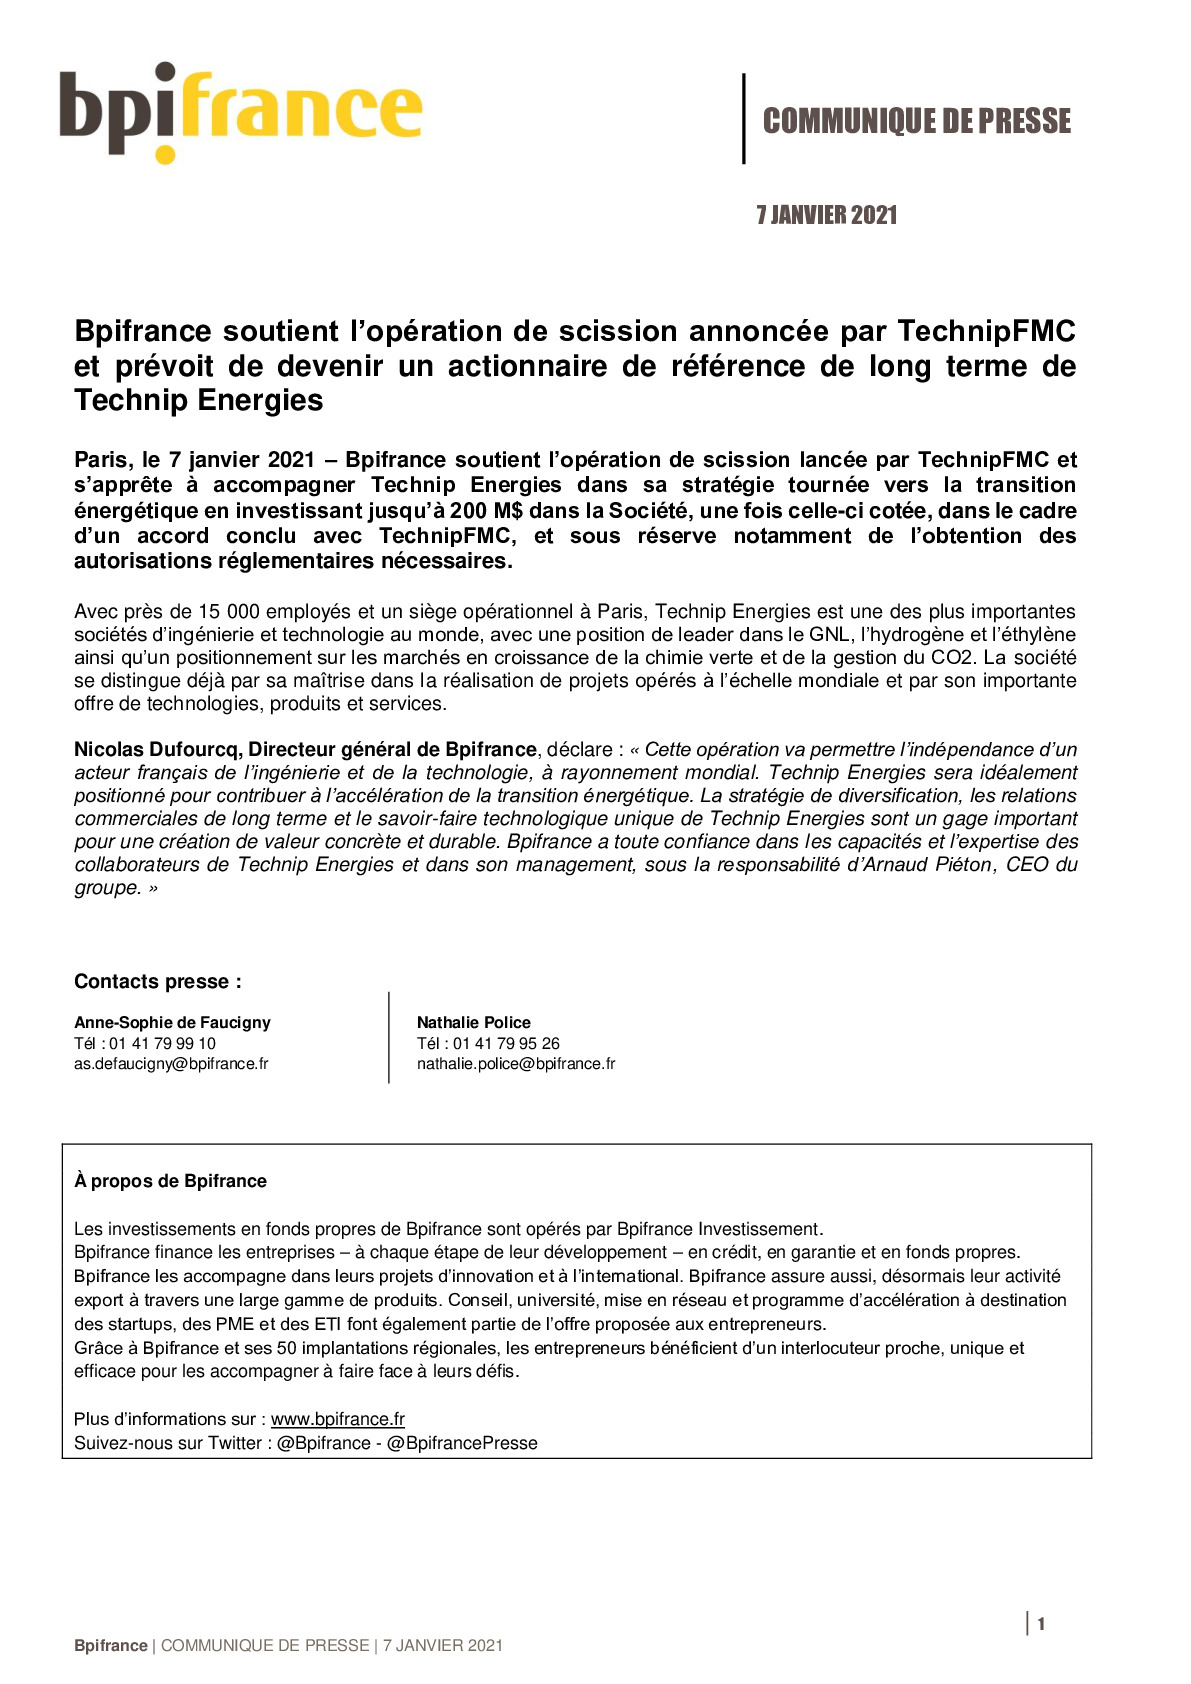 2021 01 07 – CP – Bpifrance soutient loperation de scission annoncee par TechnipFMC et prevoit de devenir un actionnaire de reference de long terme de Technip Energies-pdf